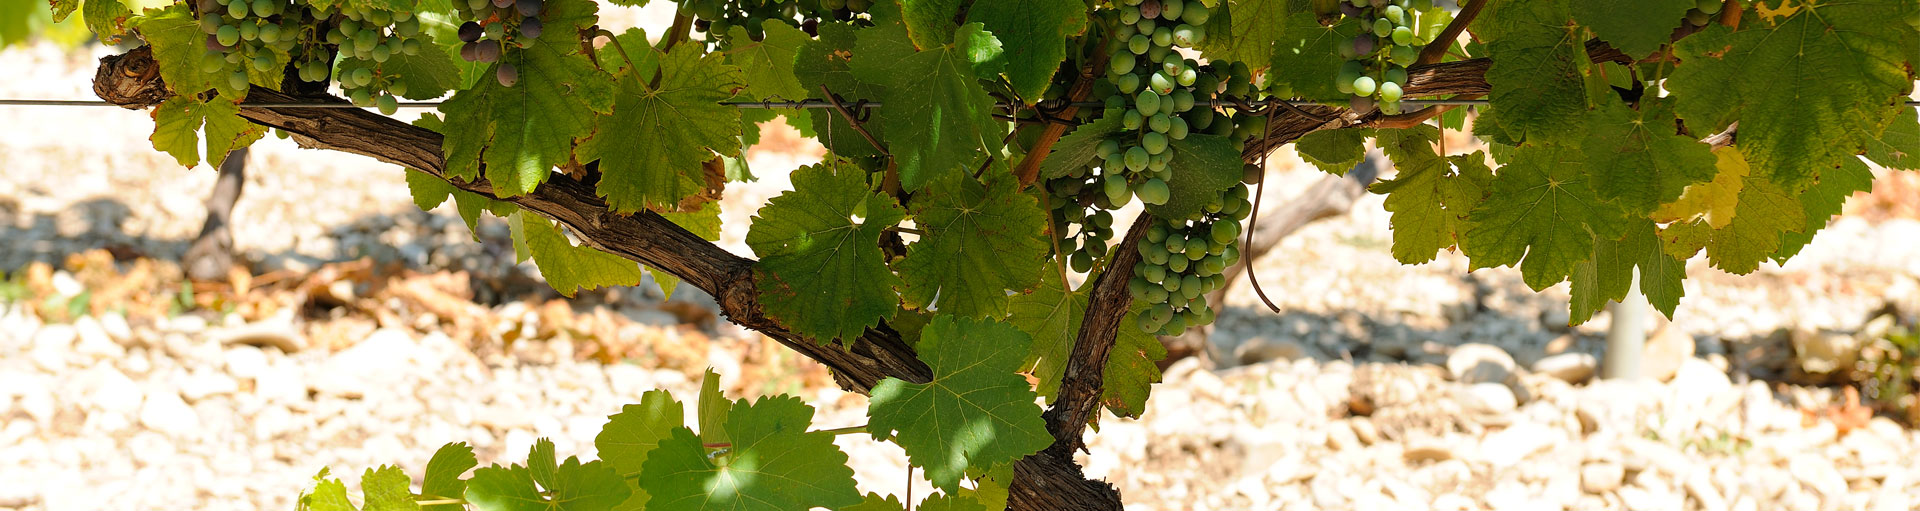 terroir et cépage vins de provence - Plan de dieu - Domaine de l'Odylée